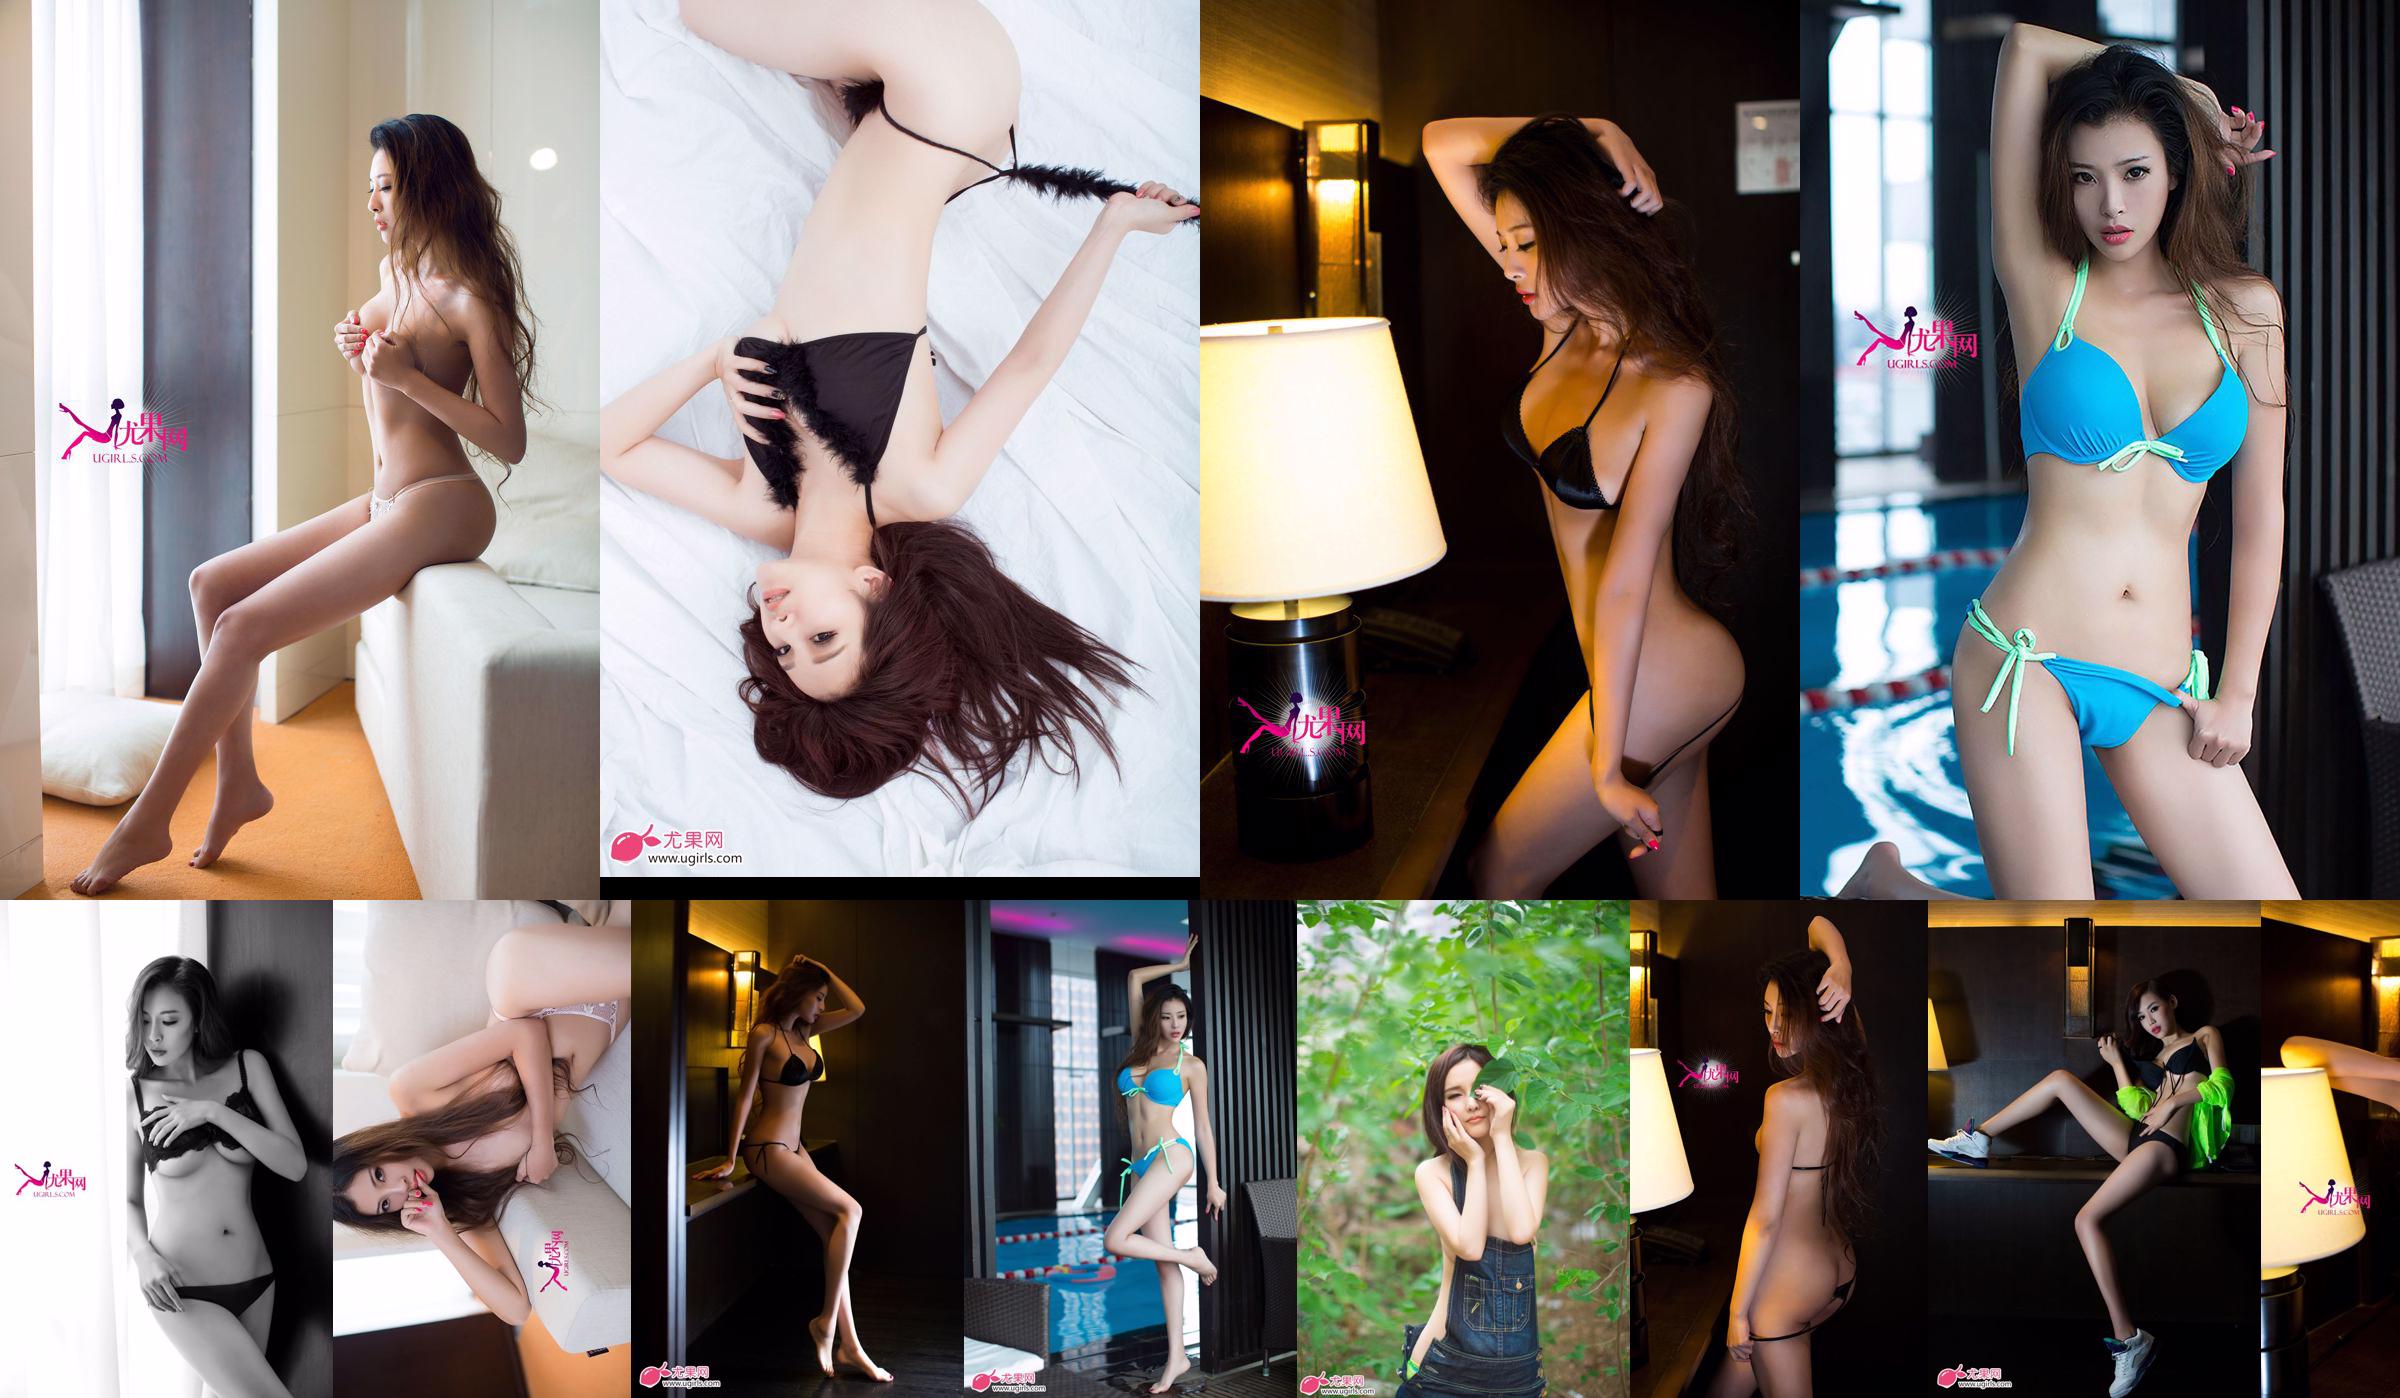 [Ugirls] E043 Langbenig model Zeng Chen "Summer Sexy" No.9d8310 Pagina 3